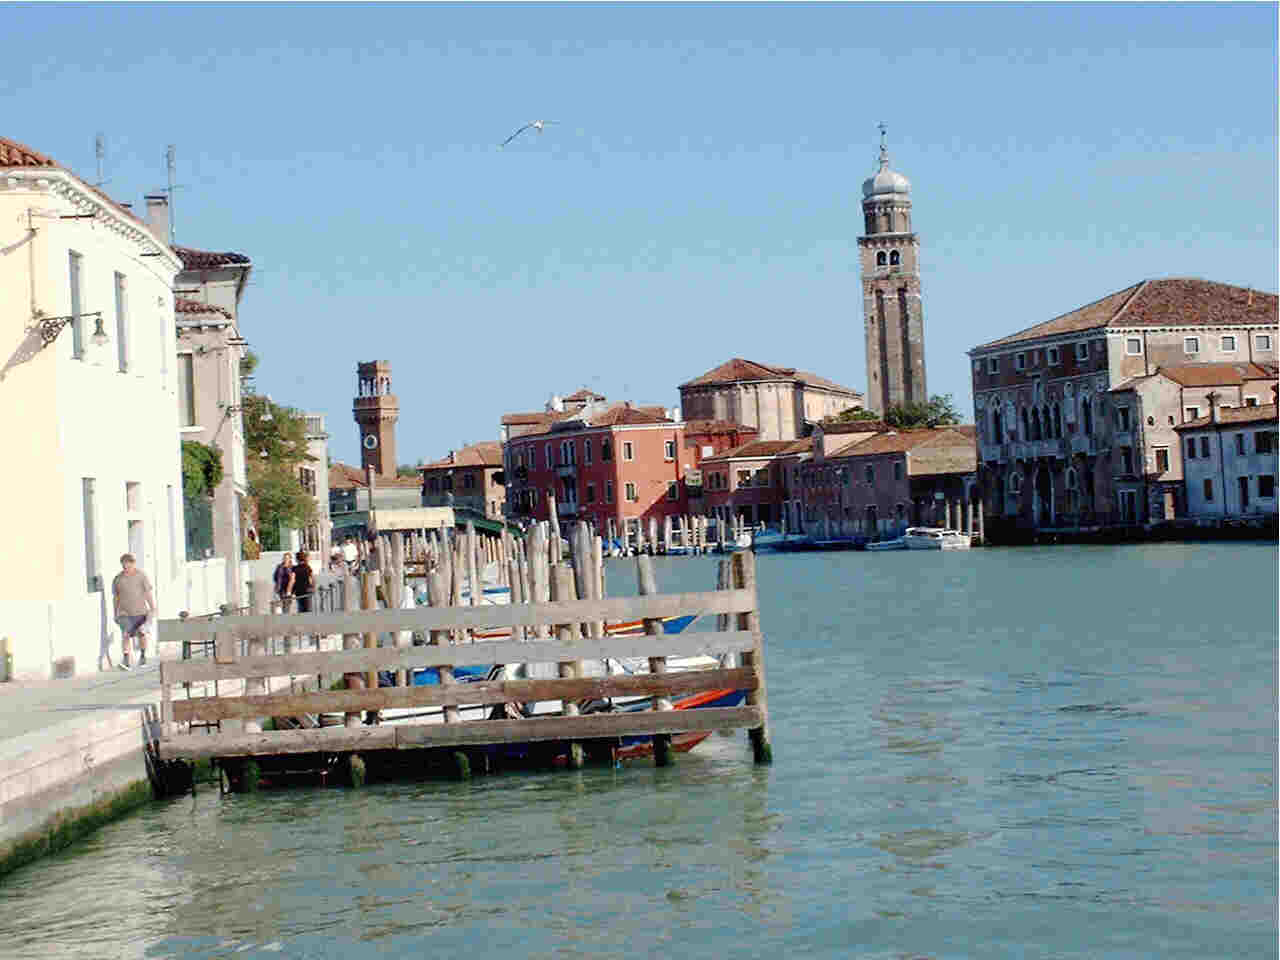 The island of Murano